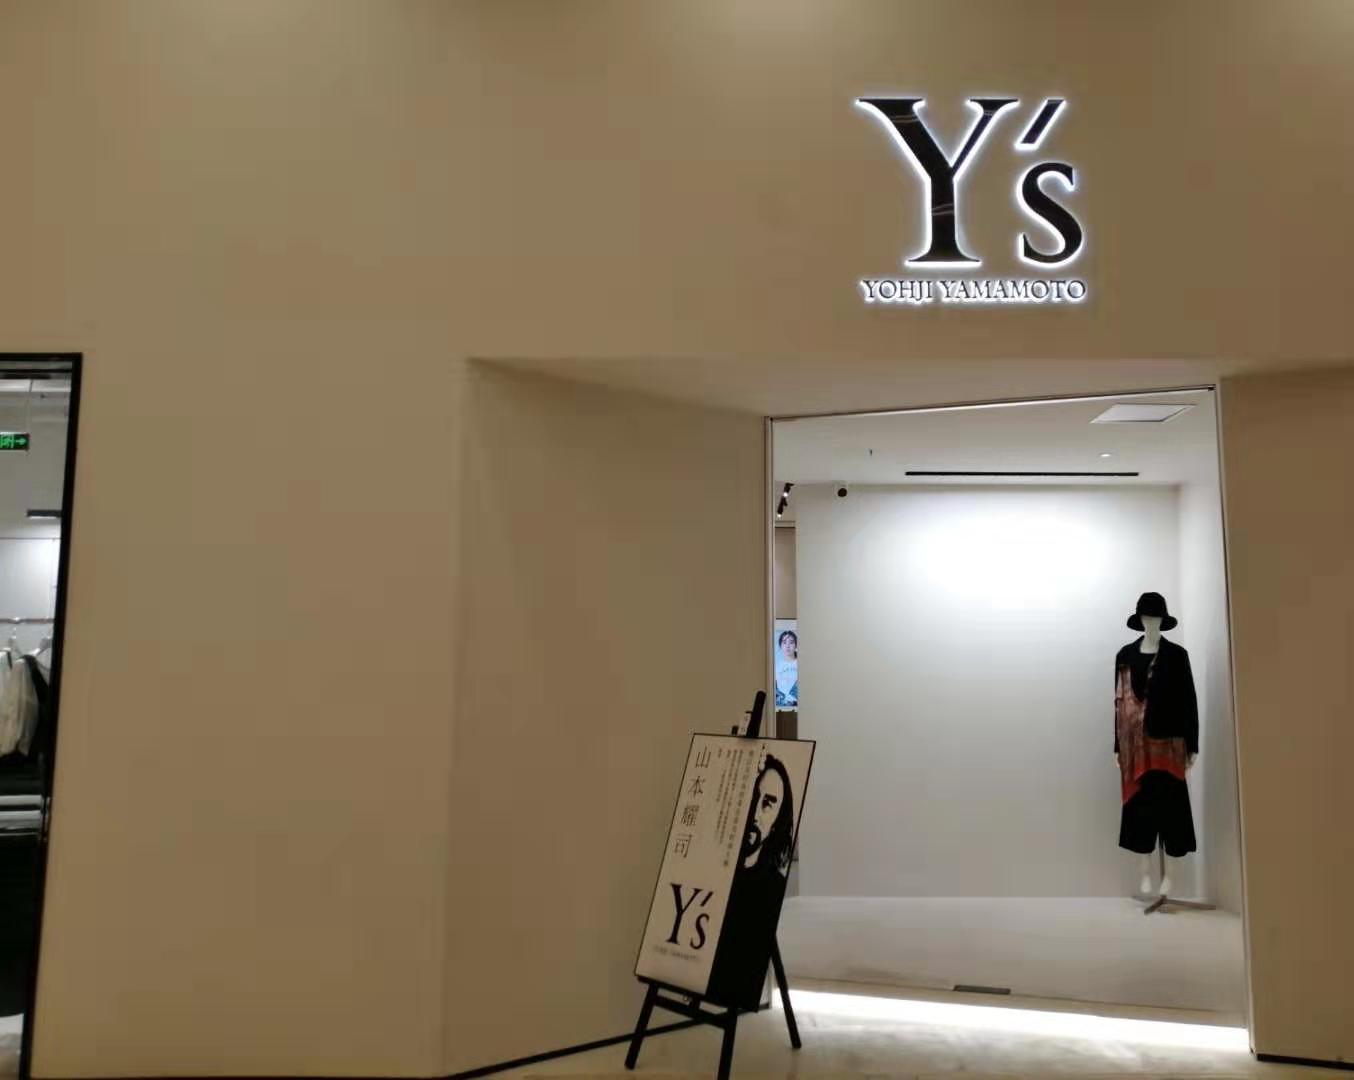 知名设计师山本耀司旗下品牌Ys西南首店亮相环球中心